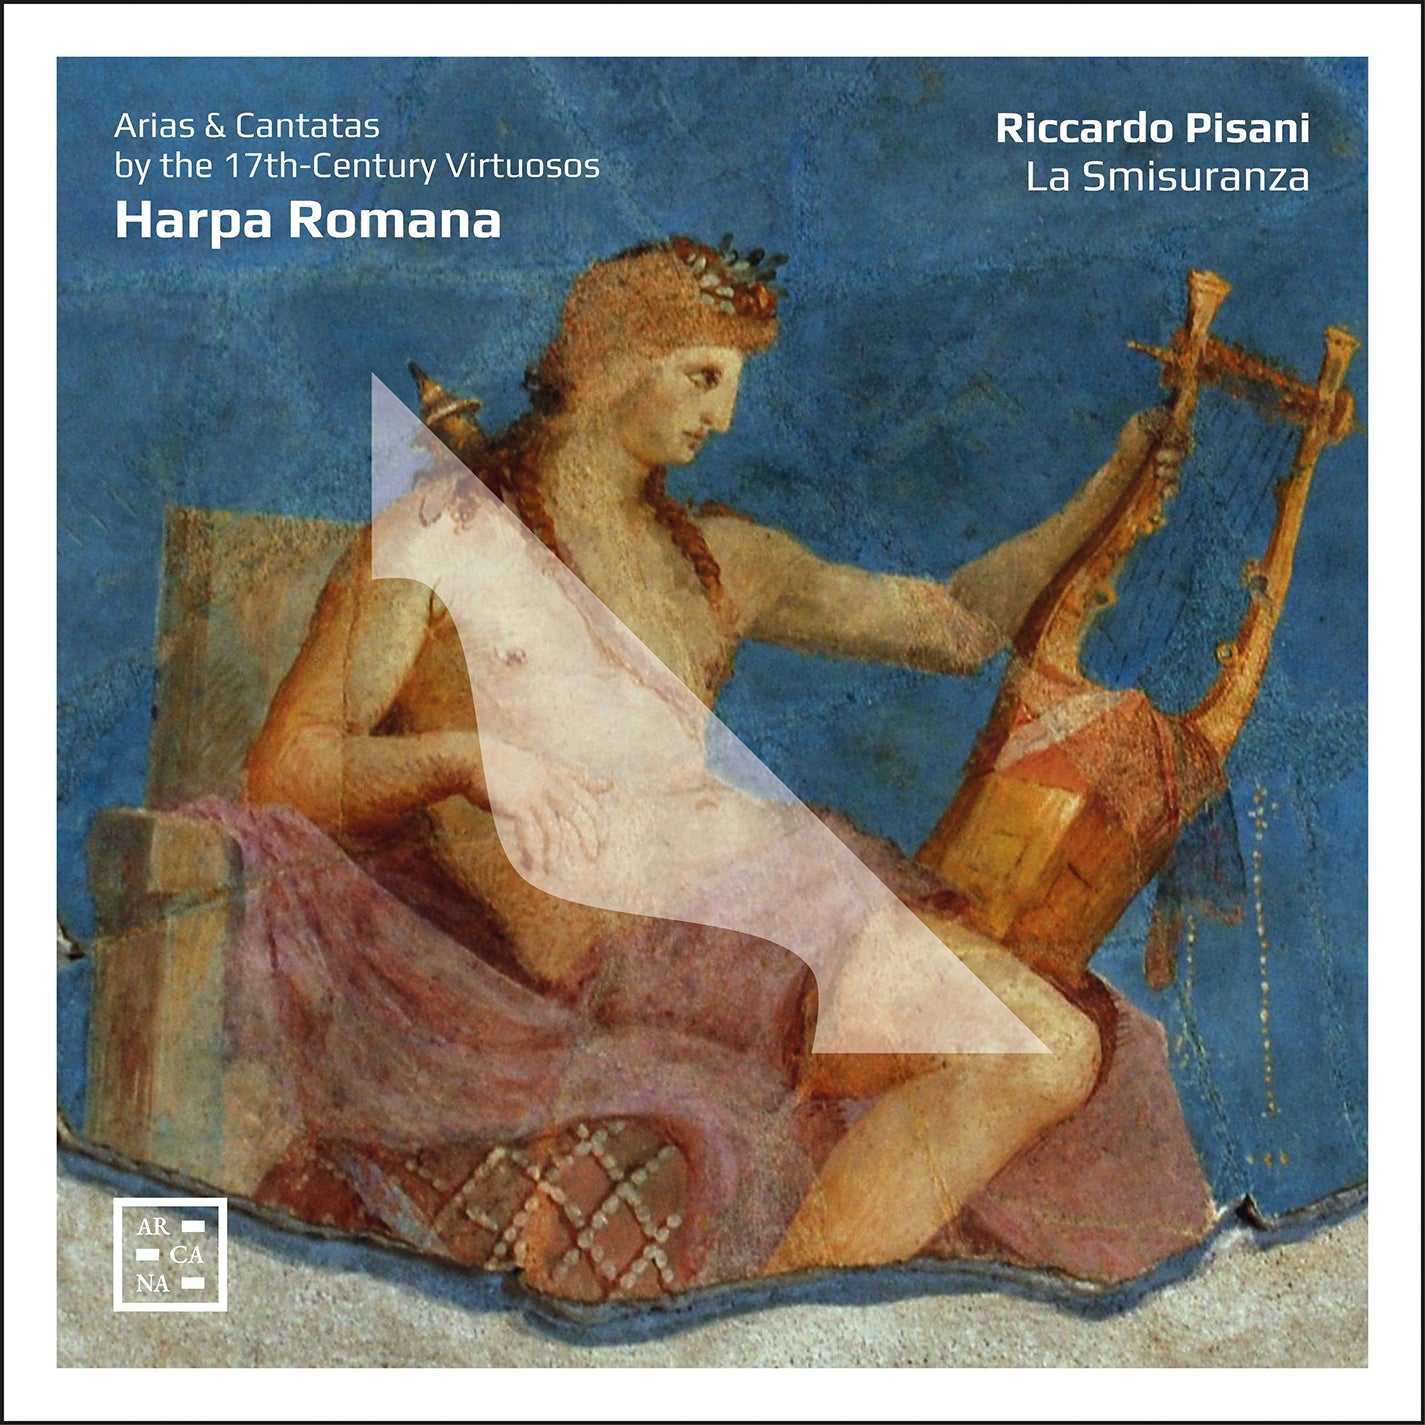 Harpa Romana - Arias & Cantatas by the 17th-Century Virtuosos